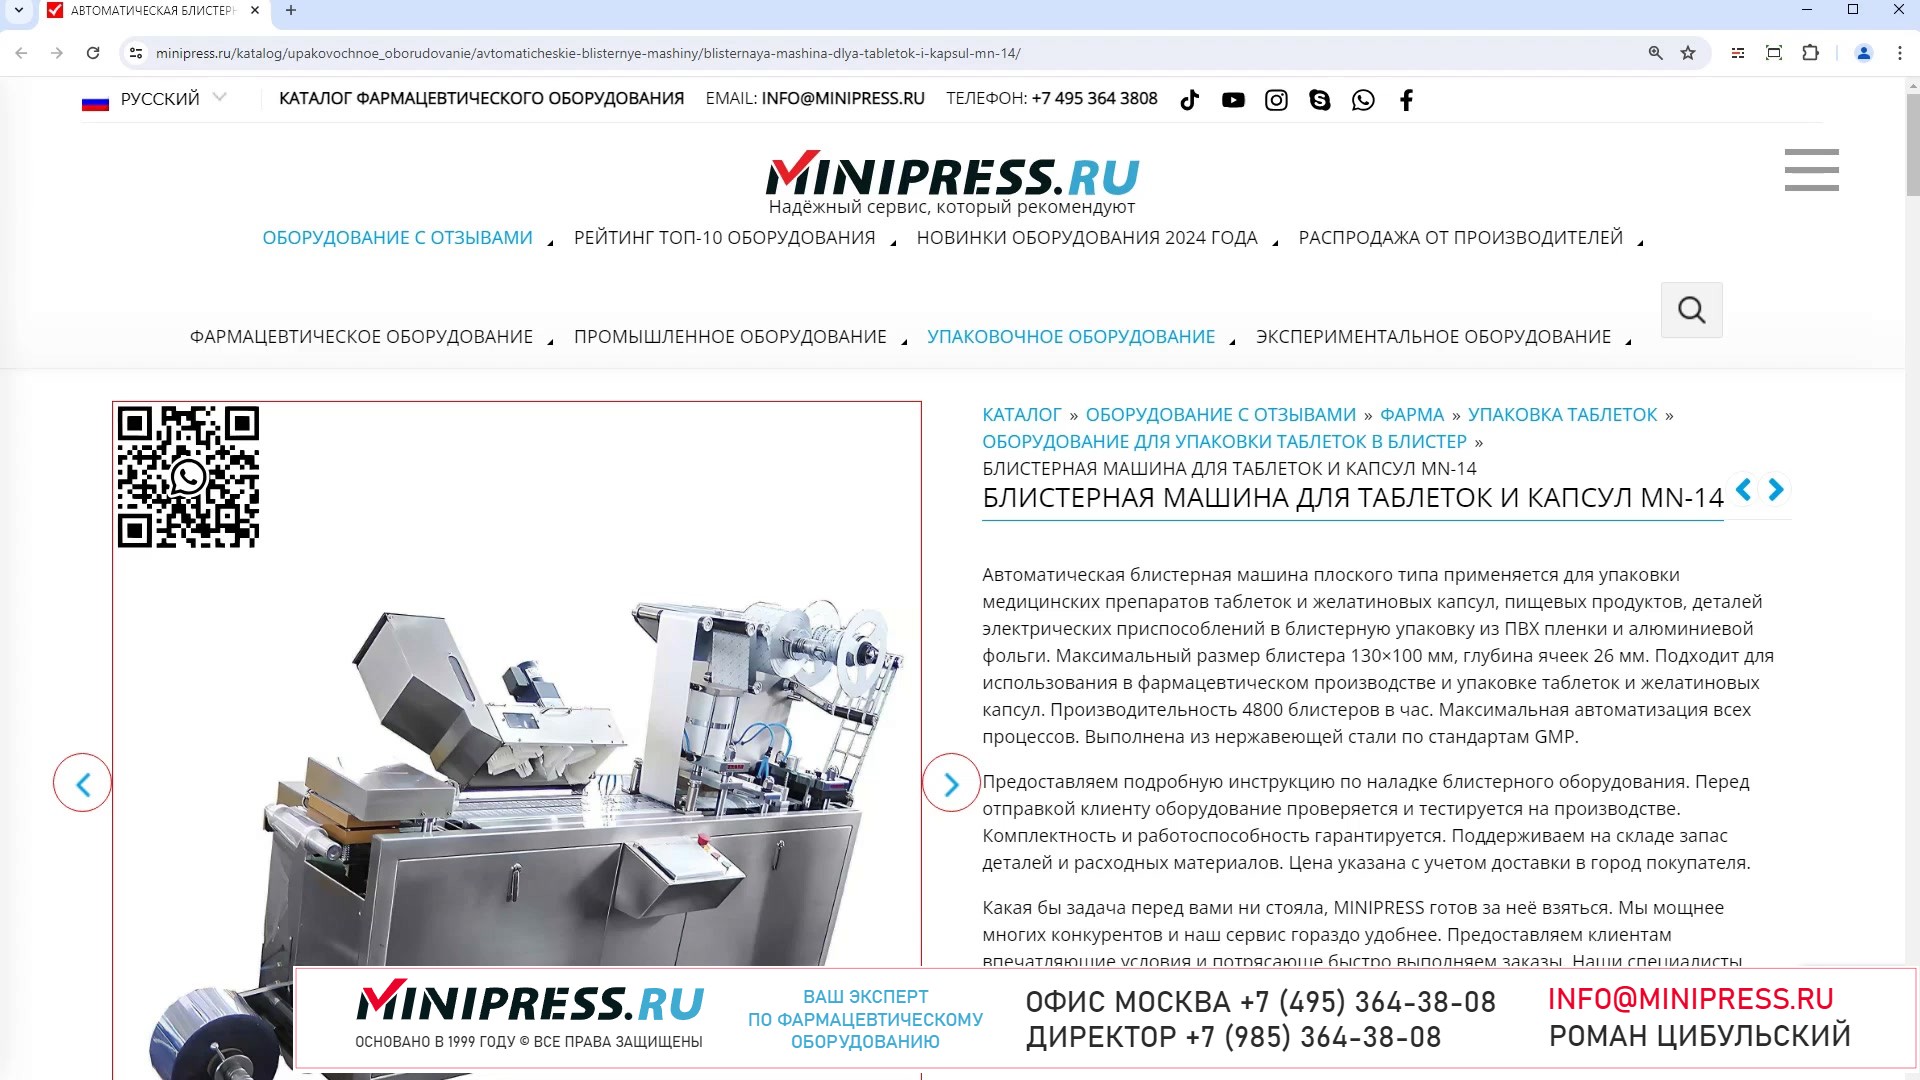 Minipress.ru Блистерная машина для таблеток и капсул MN-14